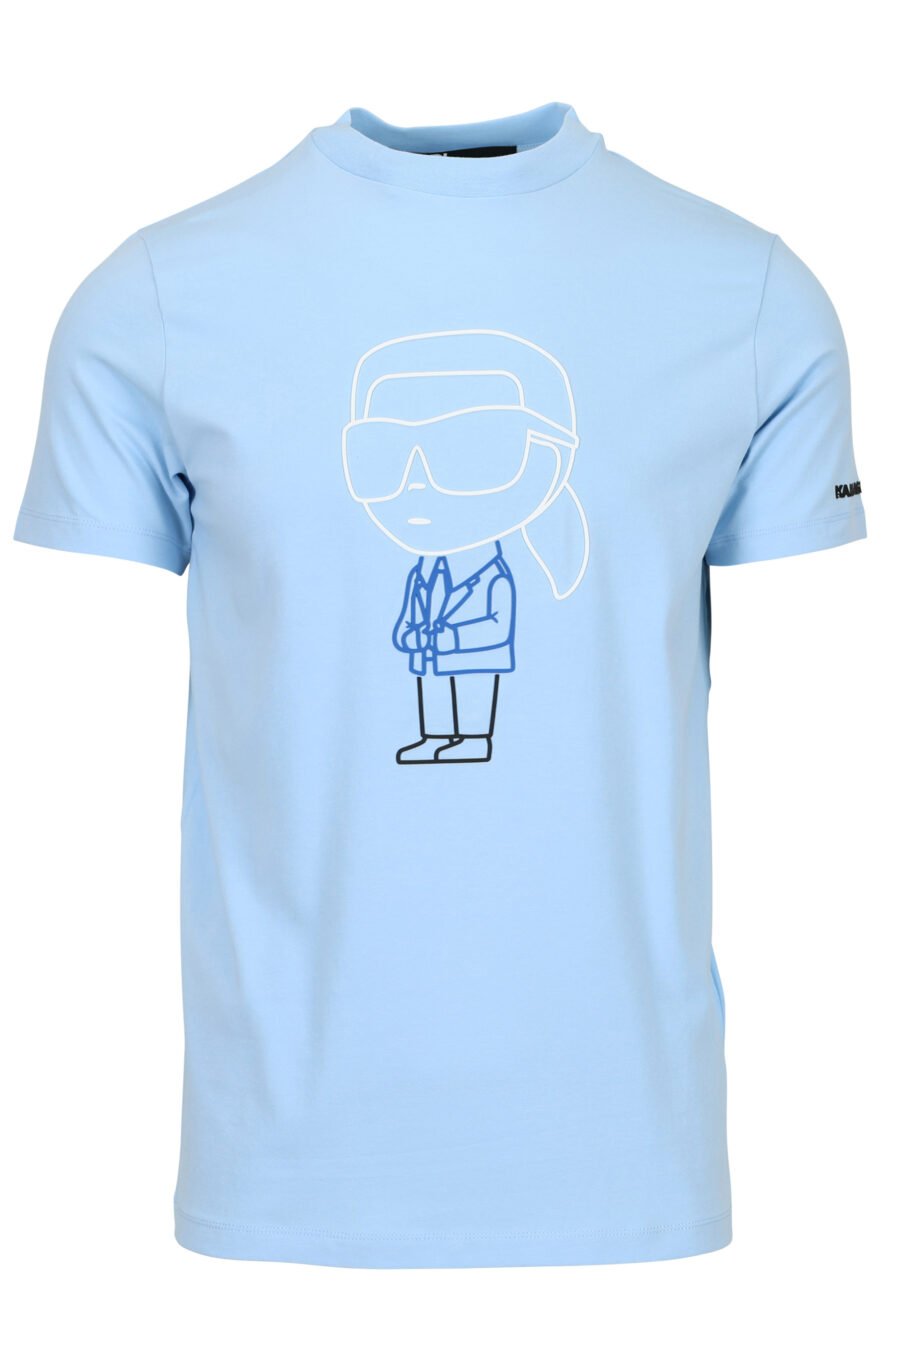 Camiseta azul claro con maxilogo en goma "karl" en azul - 4062226788847